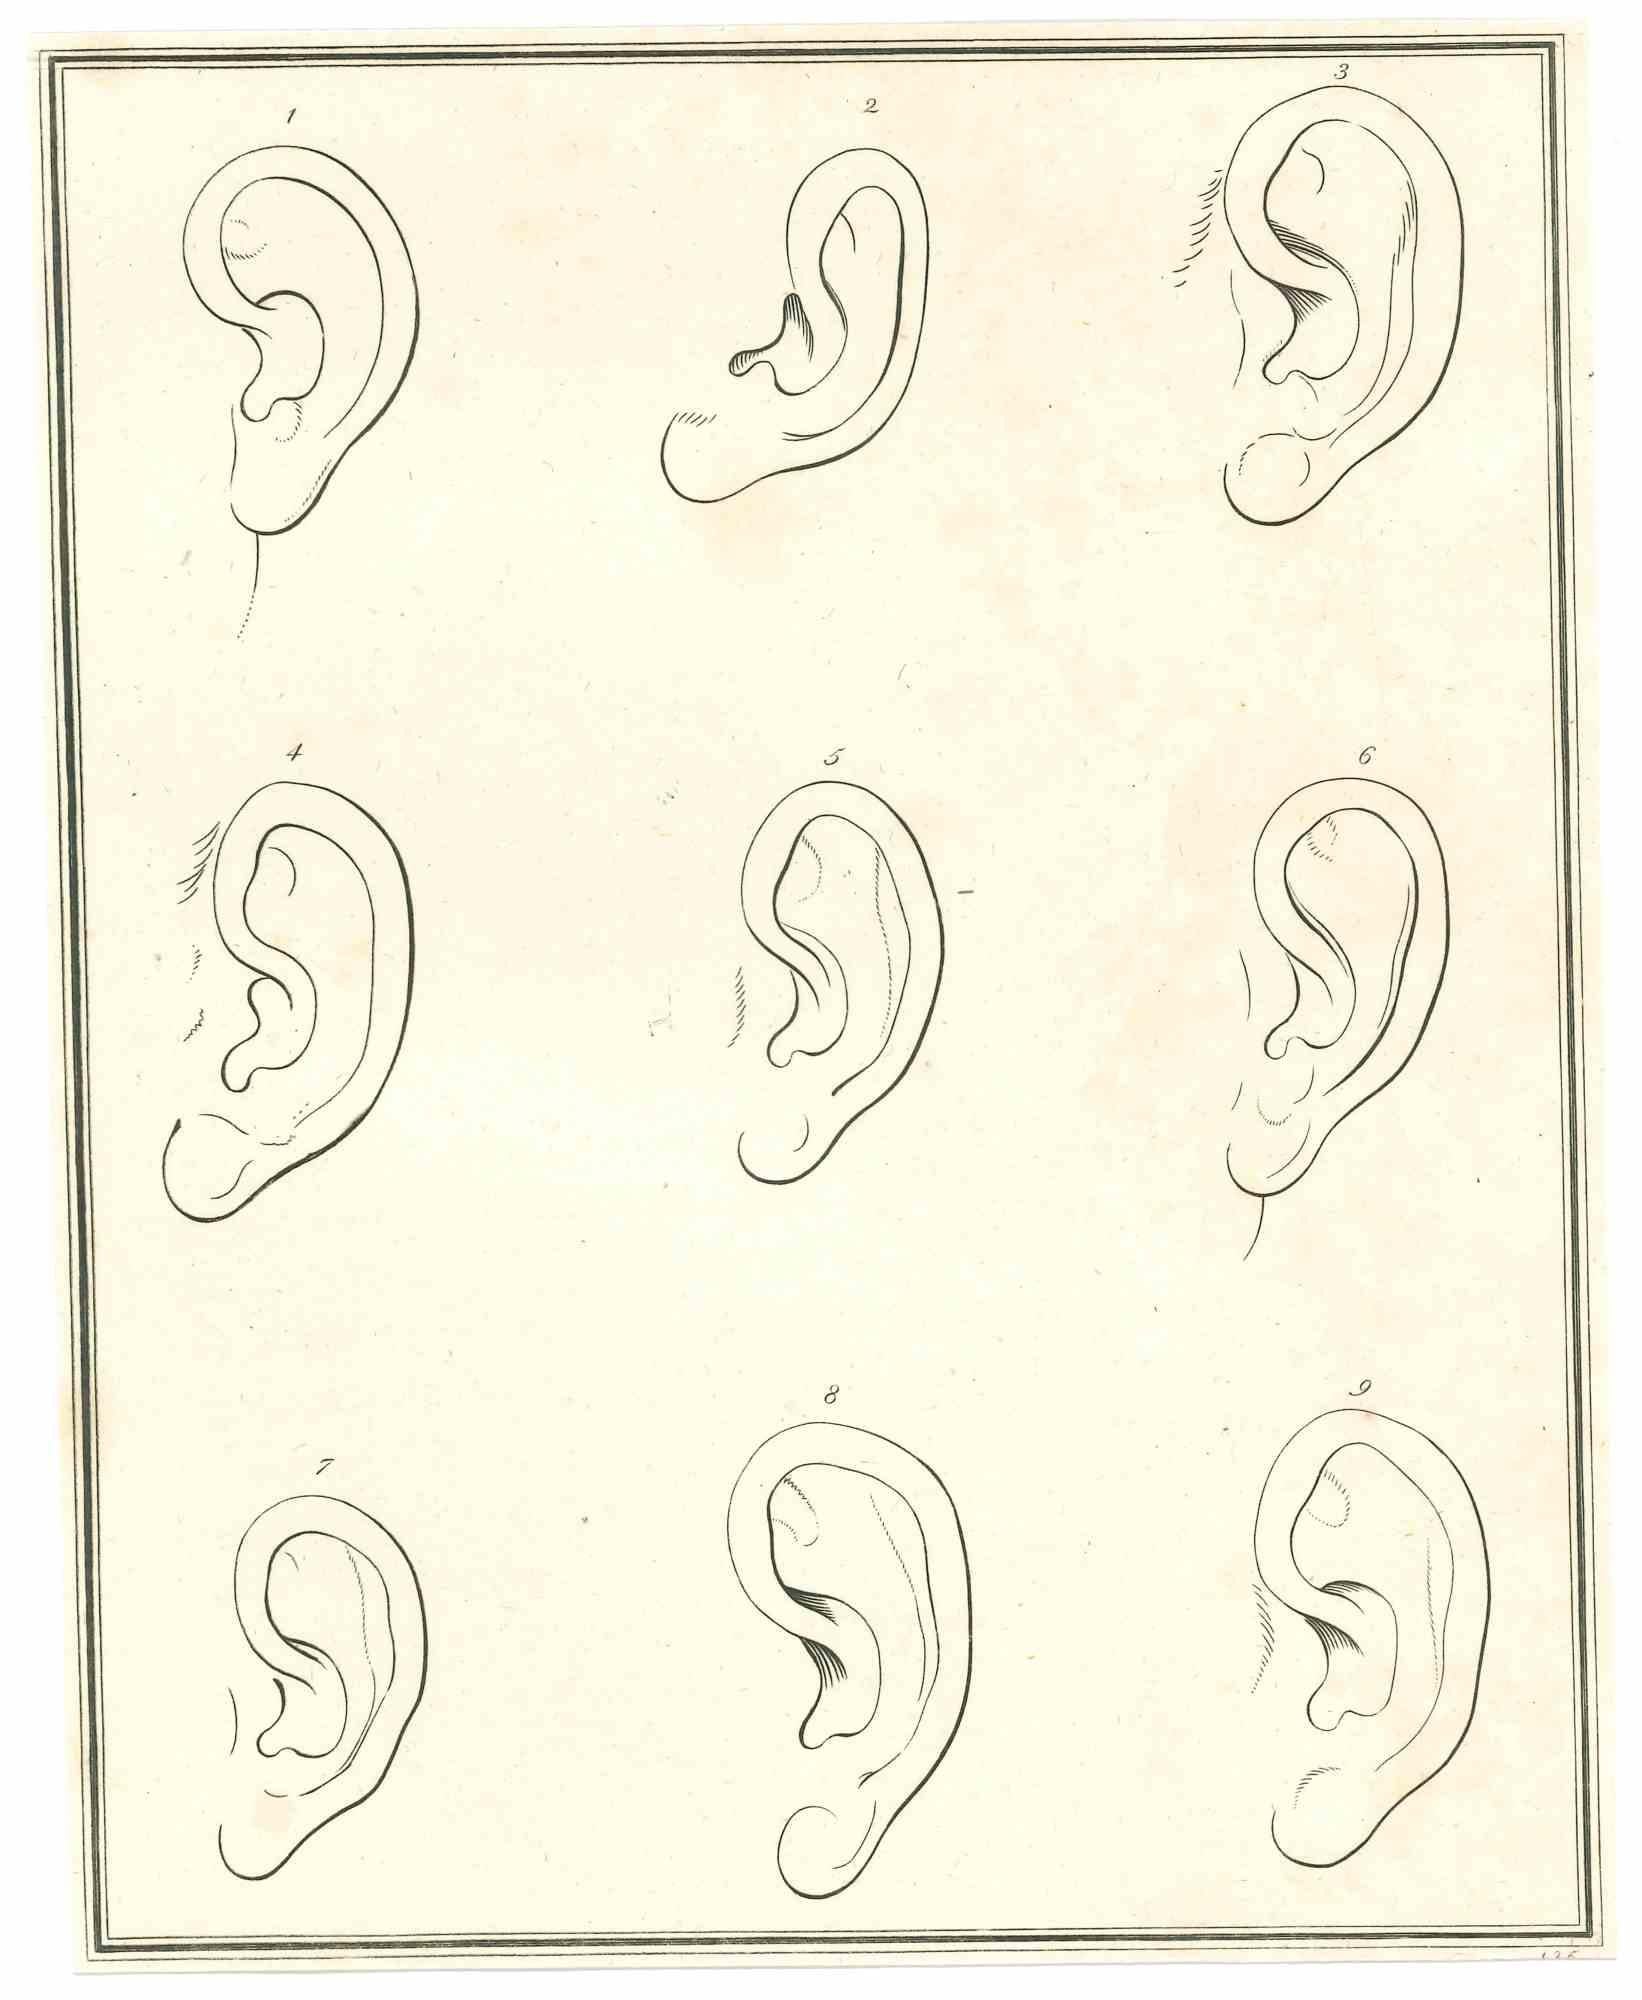 La physionomie - Les oreilles est une gravure originale réalisée par Thomas Holloway pour les "Essais sur la physionomie, destinés à promouvoir la connaissance et l'amour de l'humanité" de Johann Caspar Lavater, Londres, Bensley, 1810. 

Bonnes